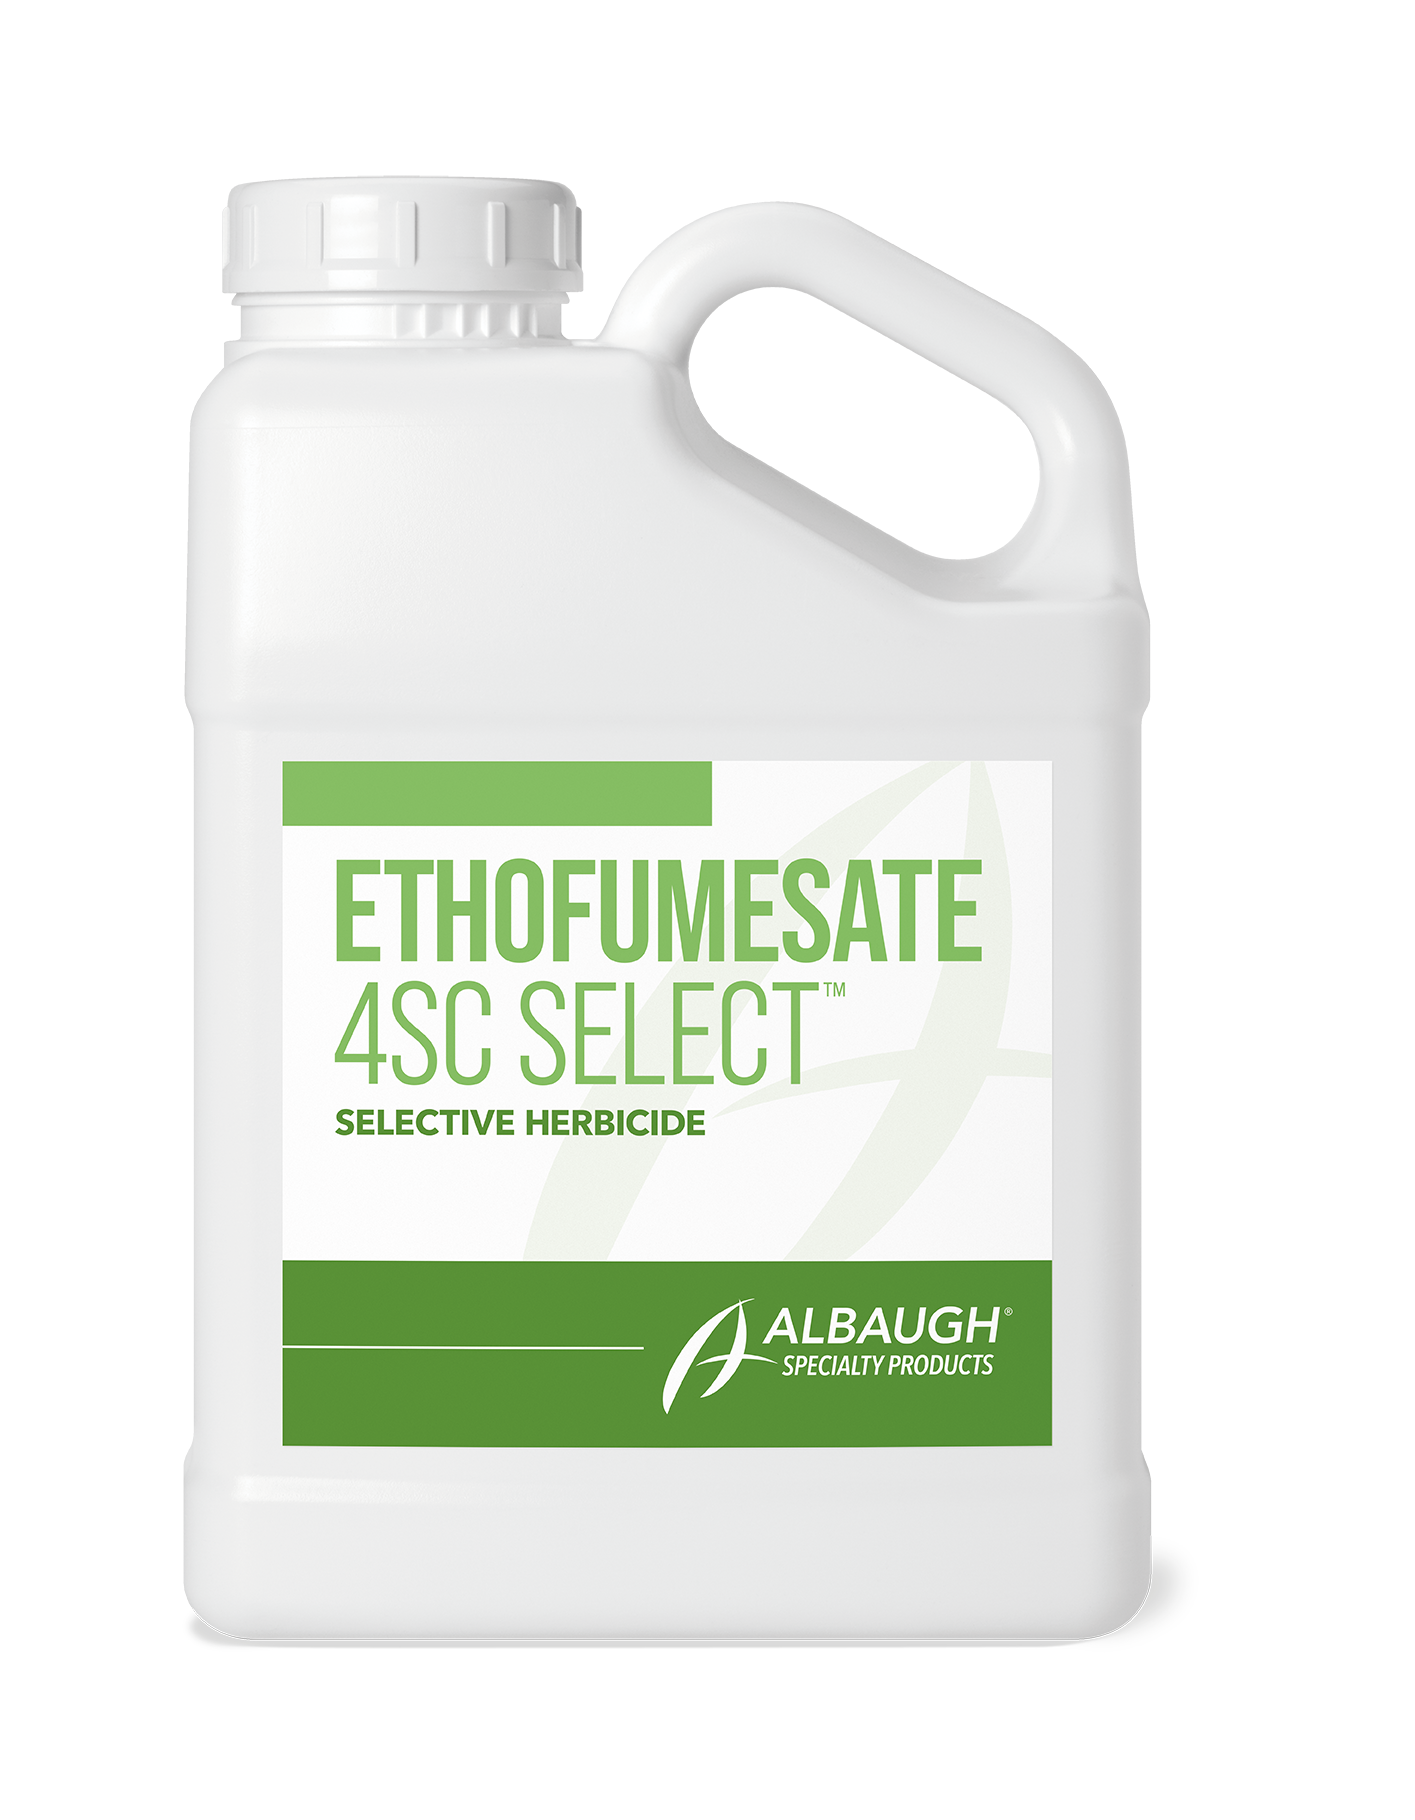 Ethofumesate 4SC Select™